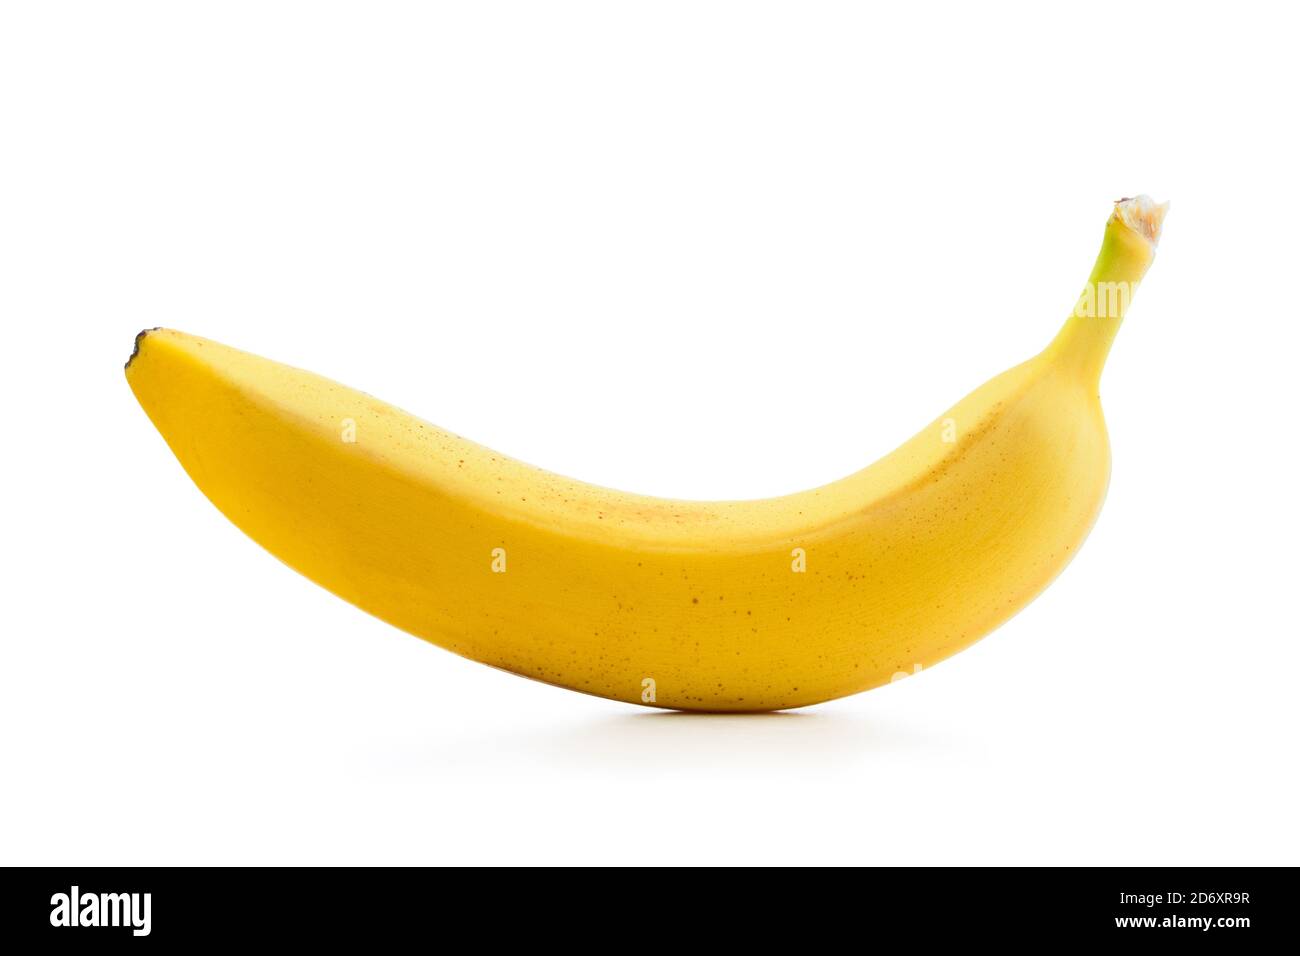 Fresh banana isolated on white Stock Photo